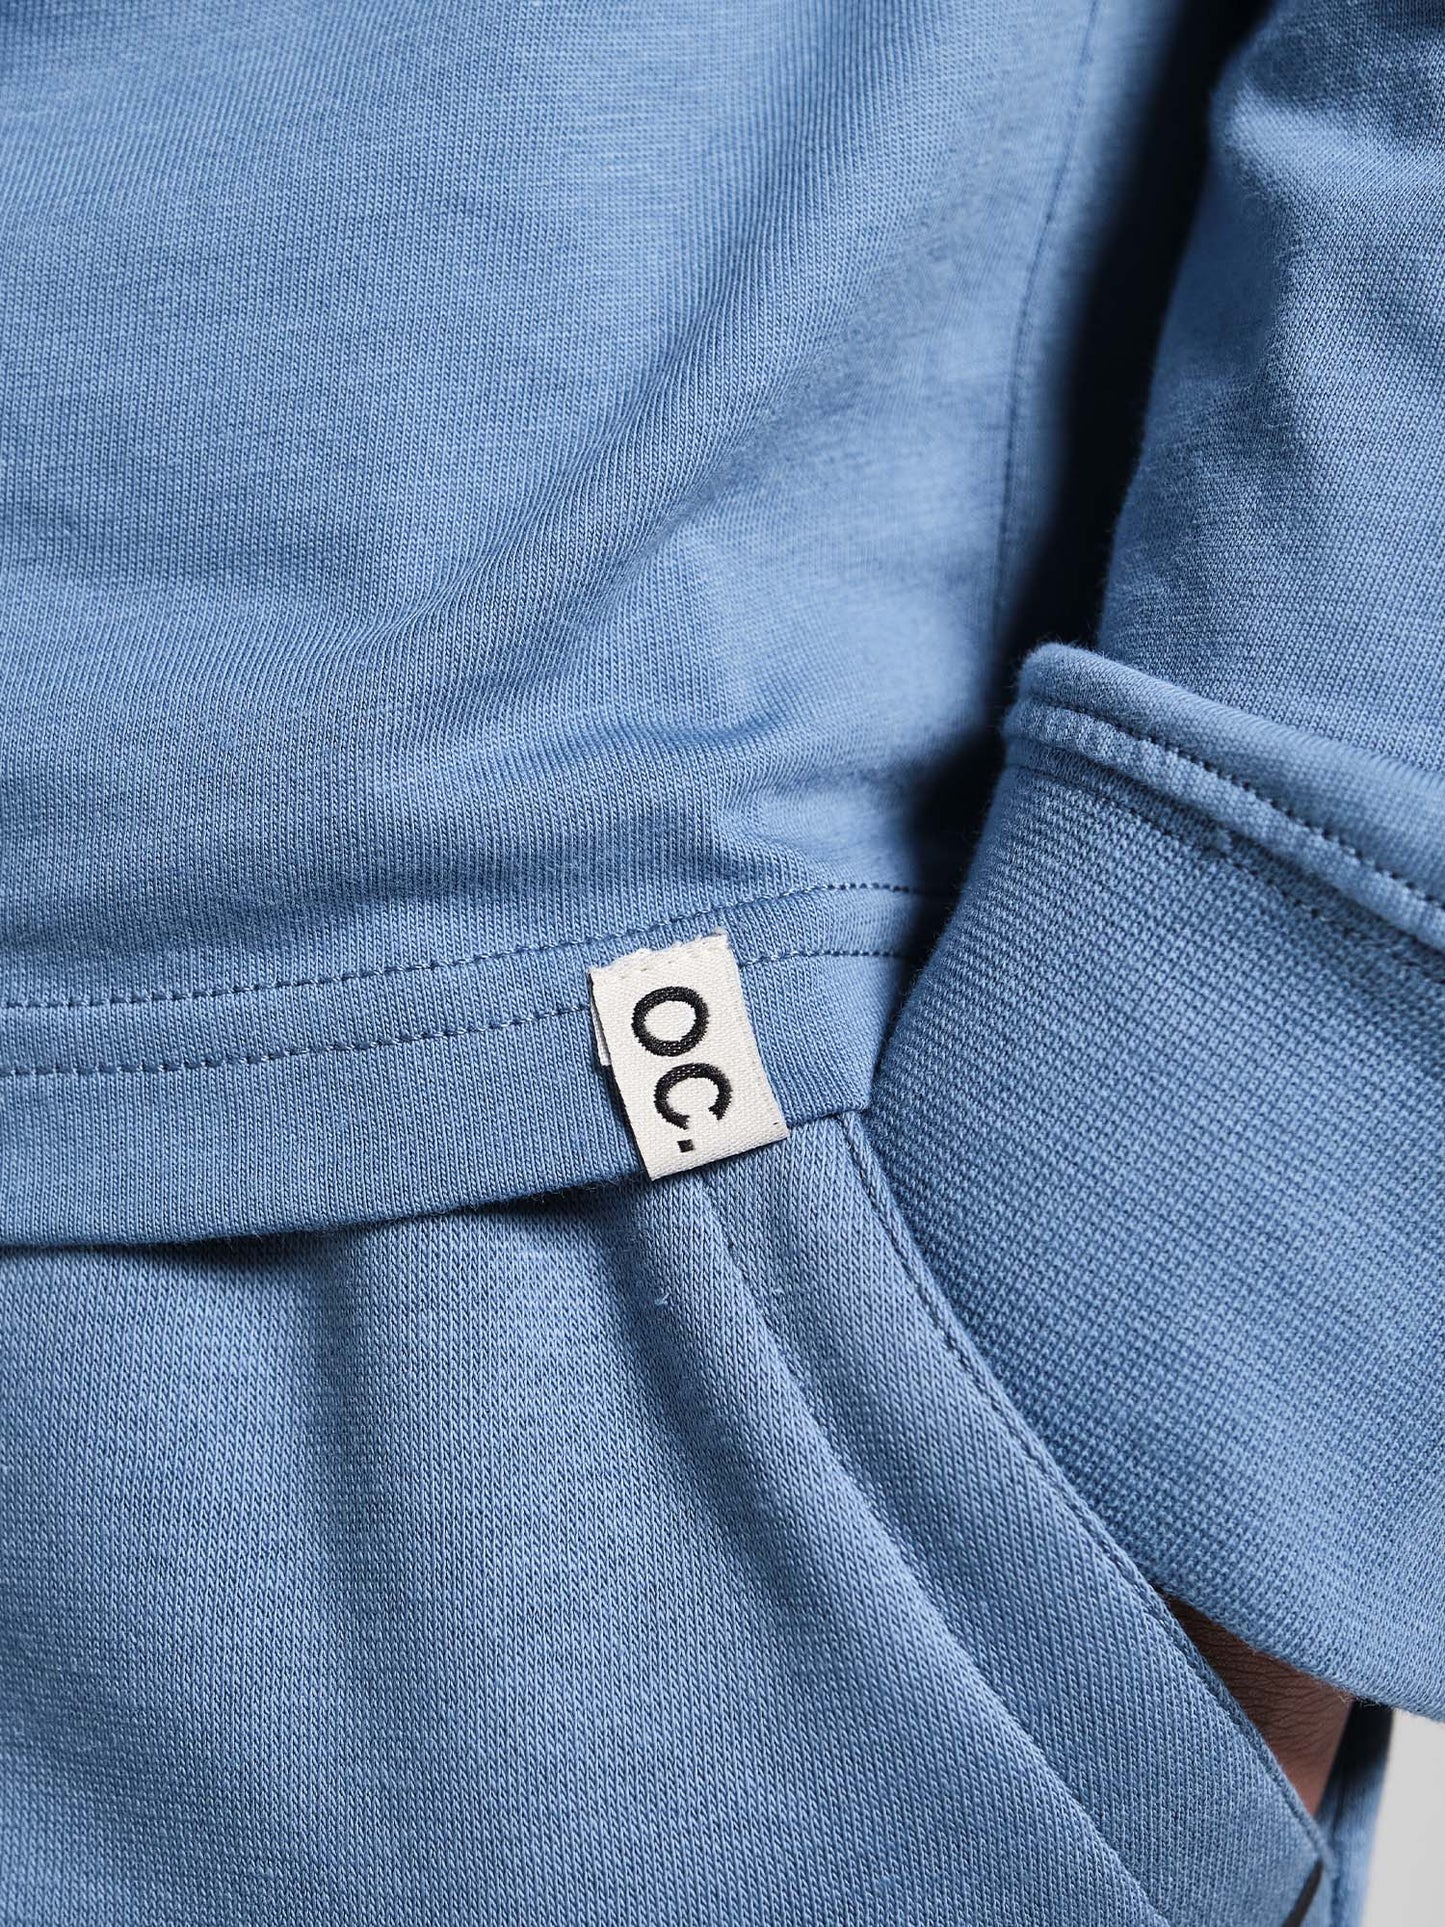 OC. Long Sleeve T-Shirt - Cerulean Blue